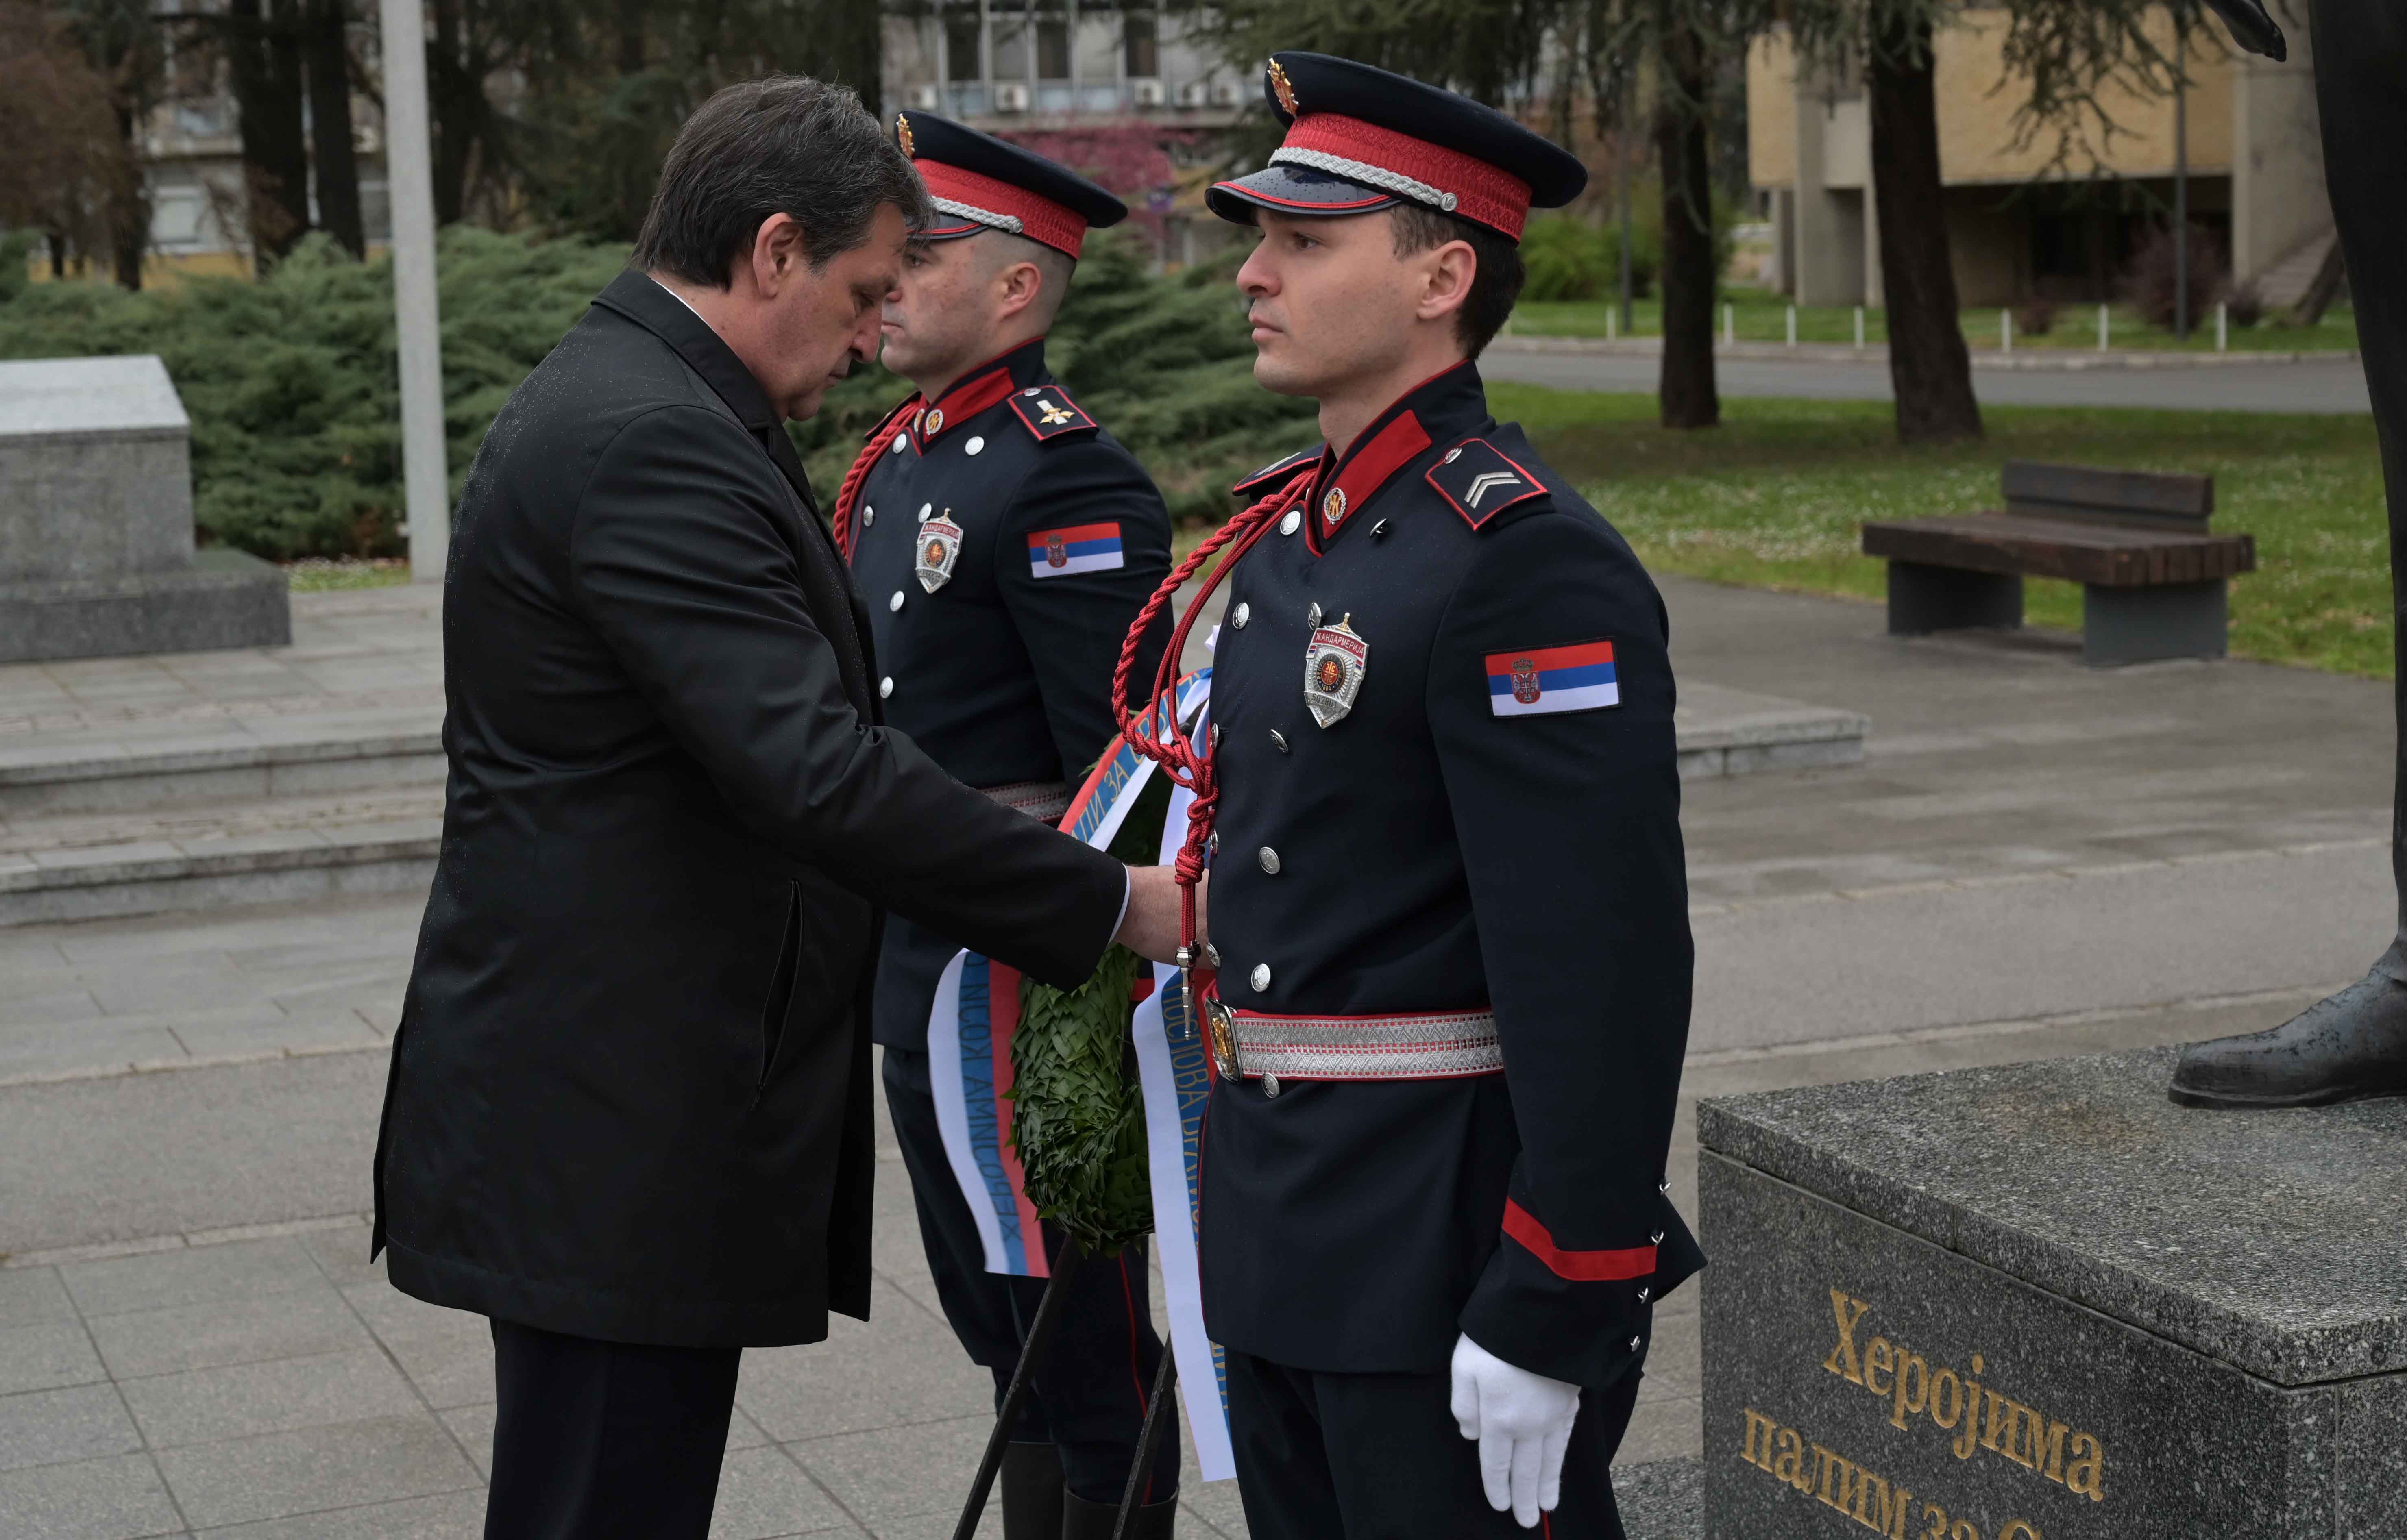 Sećanje na sve policijske službenike koji su žrtvovali svoje živote vršeći službenu dužnost zarad mira i bezbednosti Republike Srbije